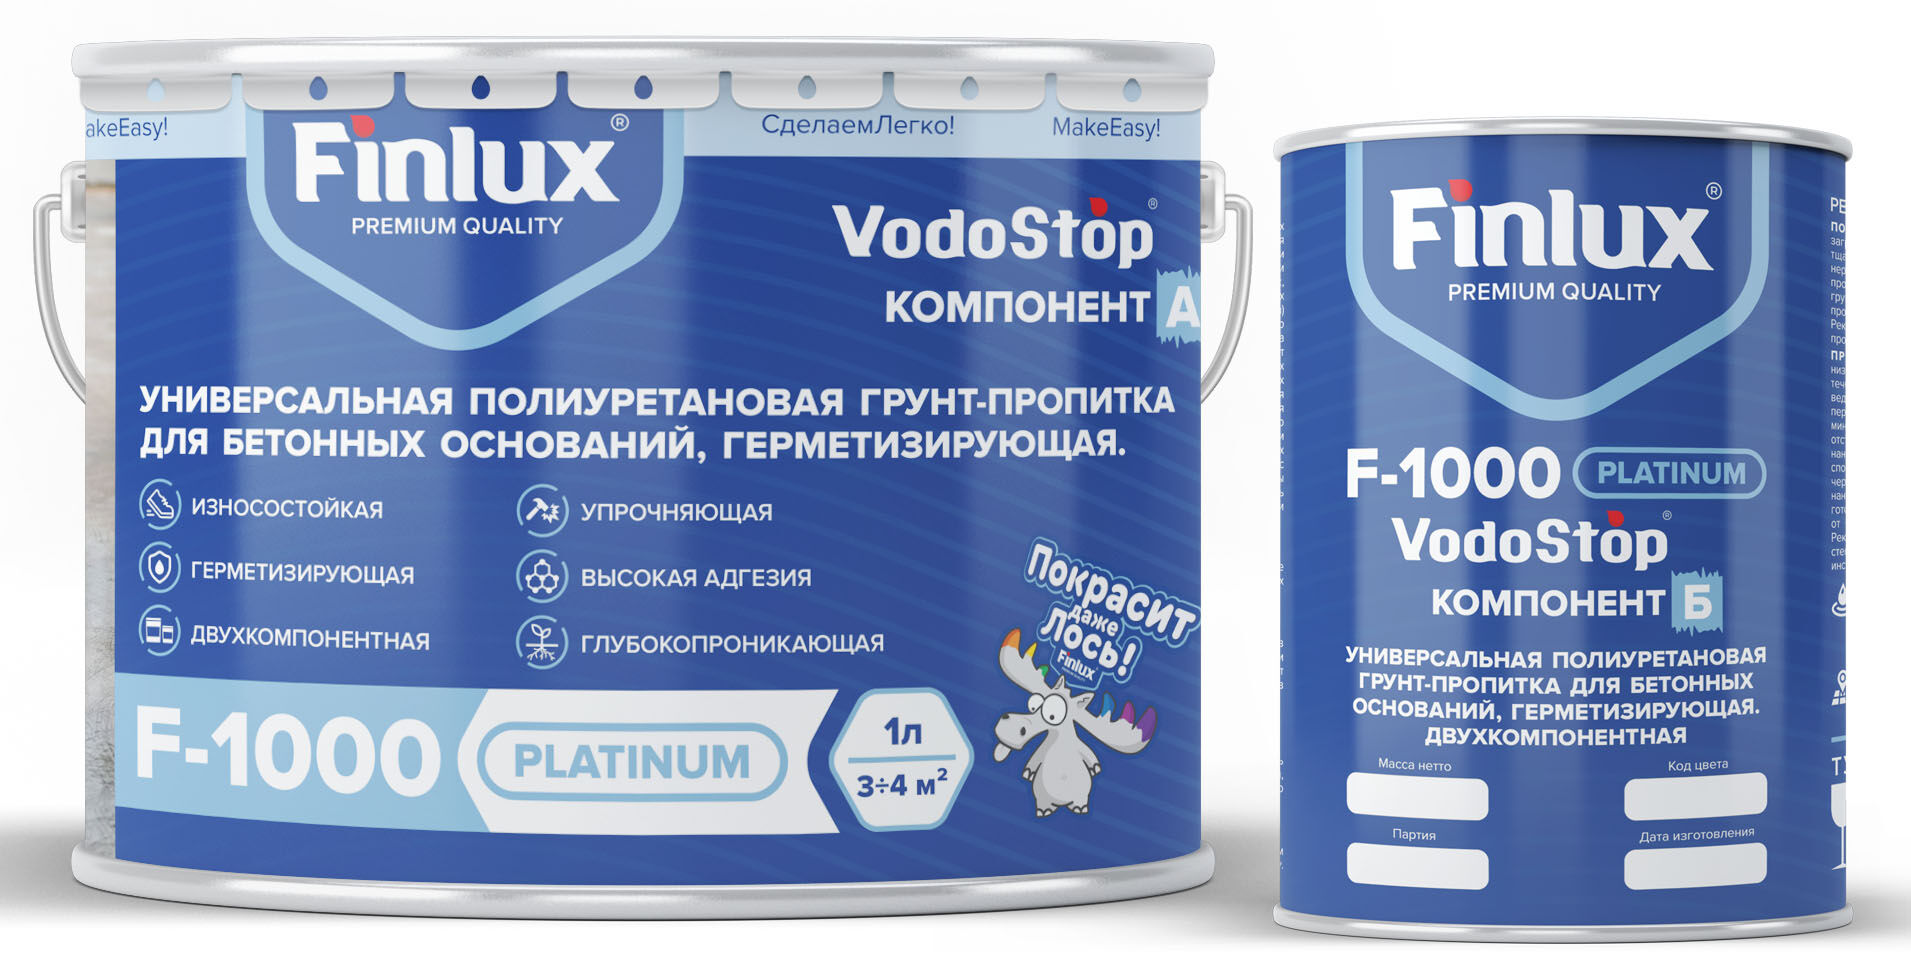 Универсальная полиуретановая герметизирующая грунт-пропитка для бетона Finlux F-1000 Platinum 20 кг VodoStop®